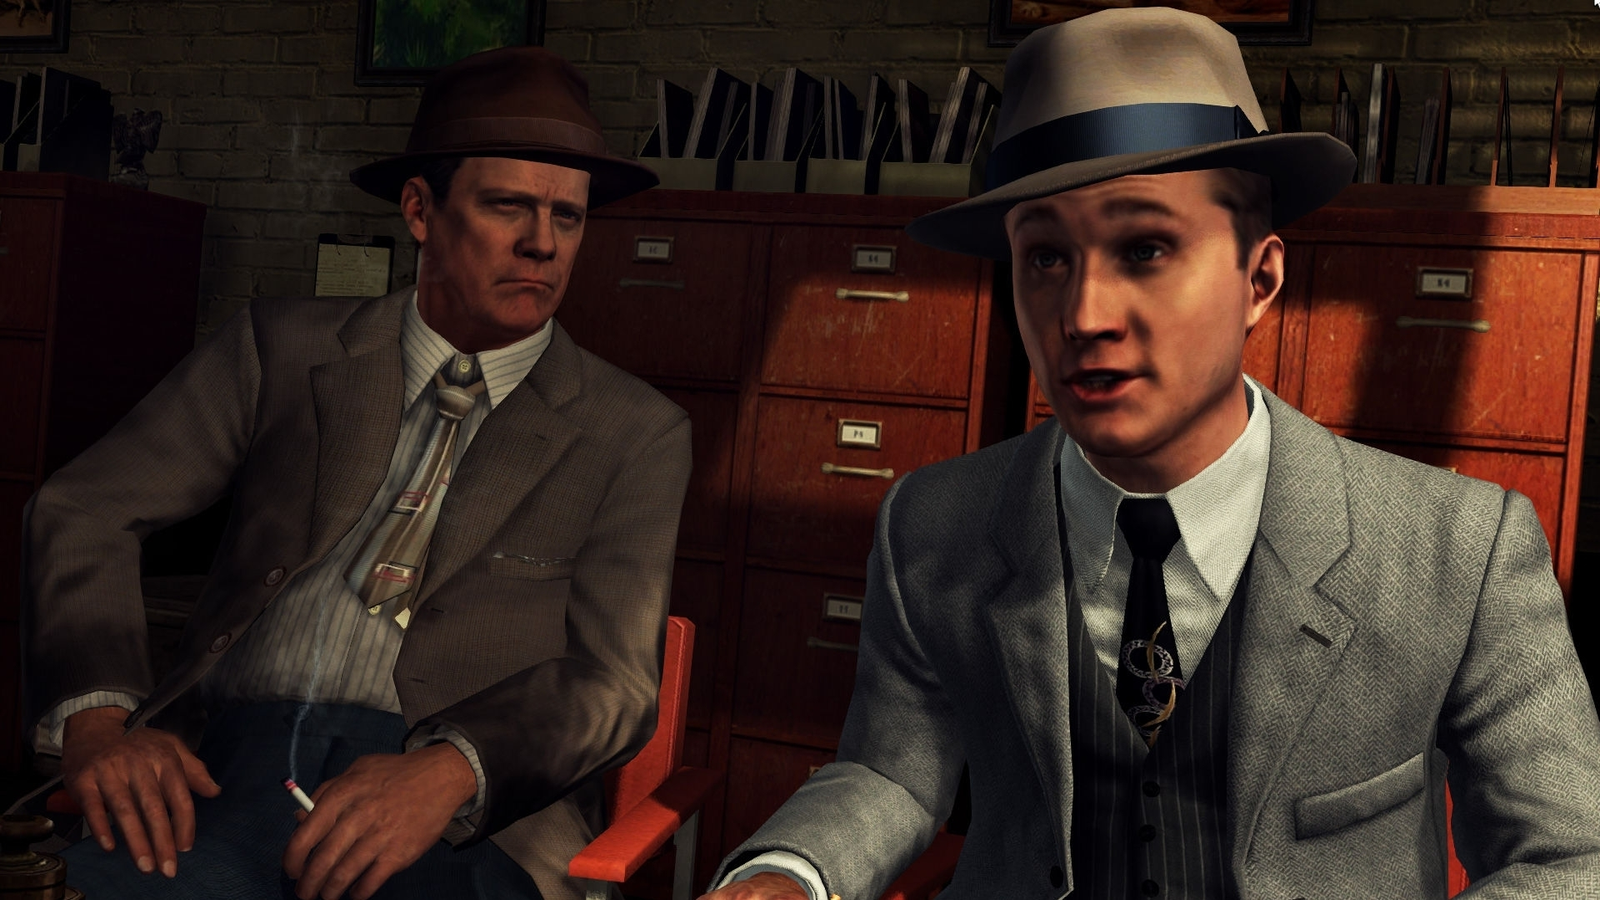 L.A. Noire' Rockstar Social Club Details